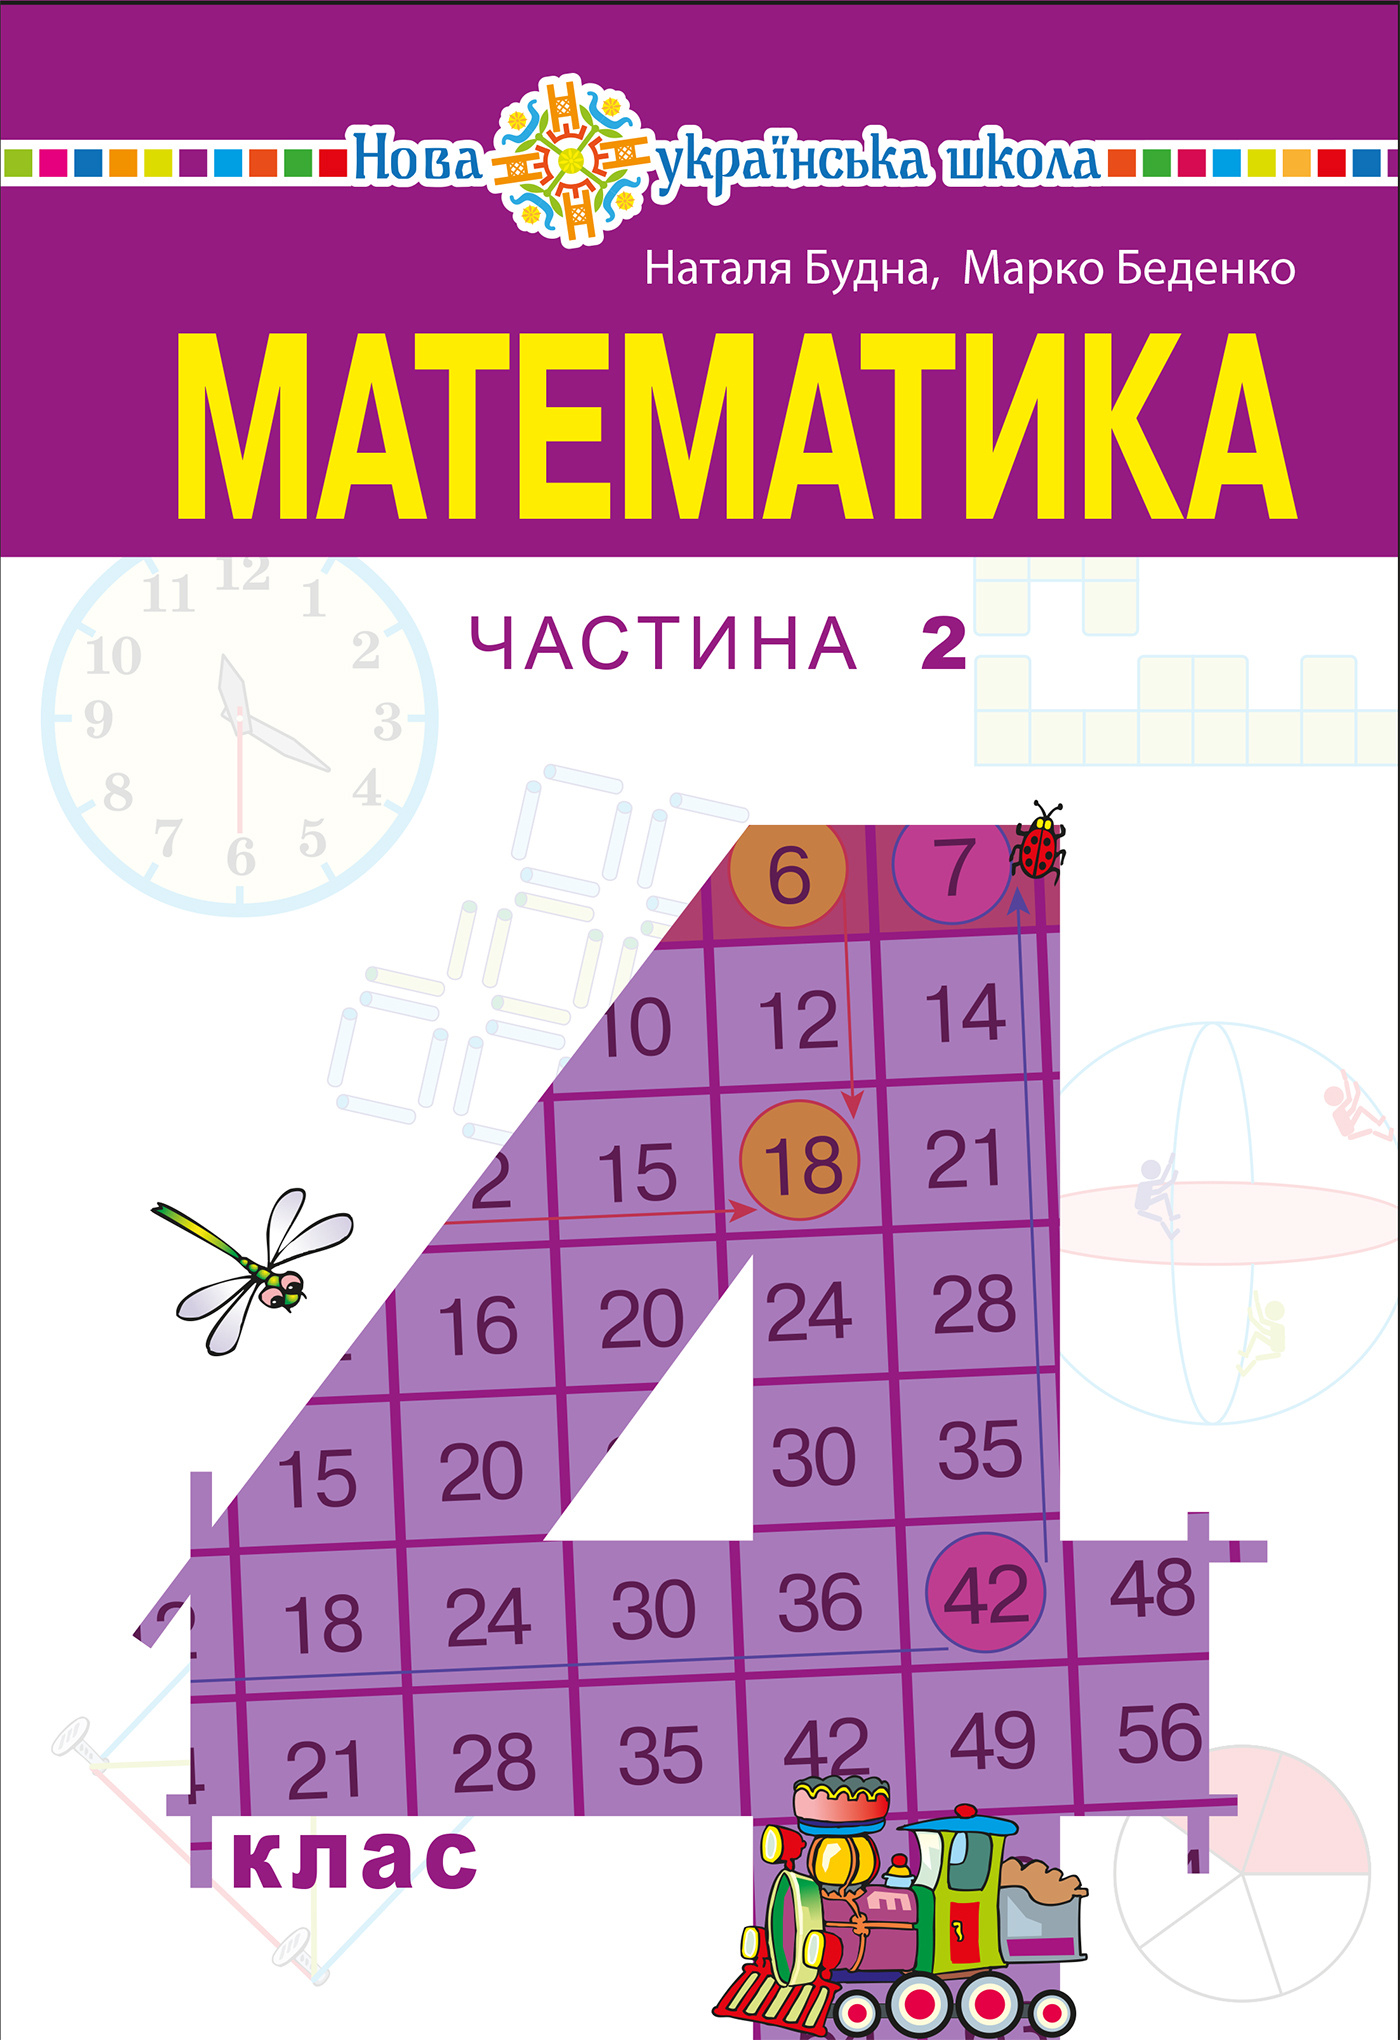 "Математика" підручник для 4 класу закладів загальної середньої освіти (у 2-х частинах) Частина 2  (2021 год). Автор — Наталія Будна. 